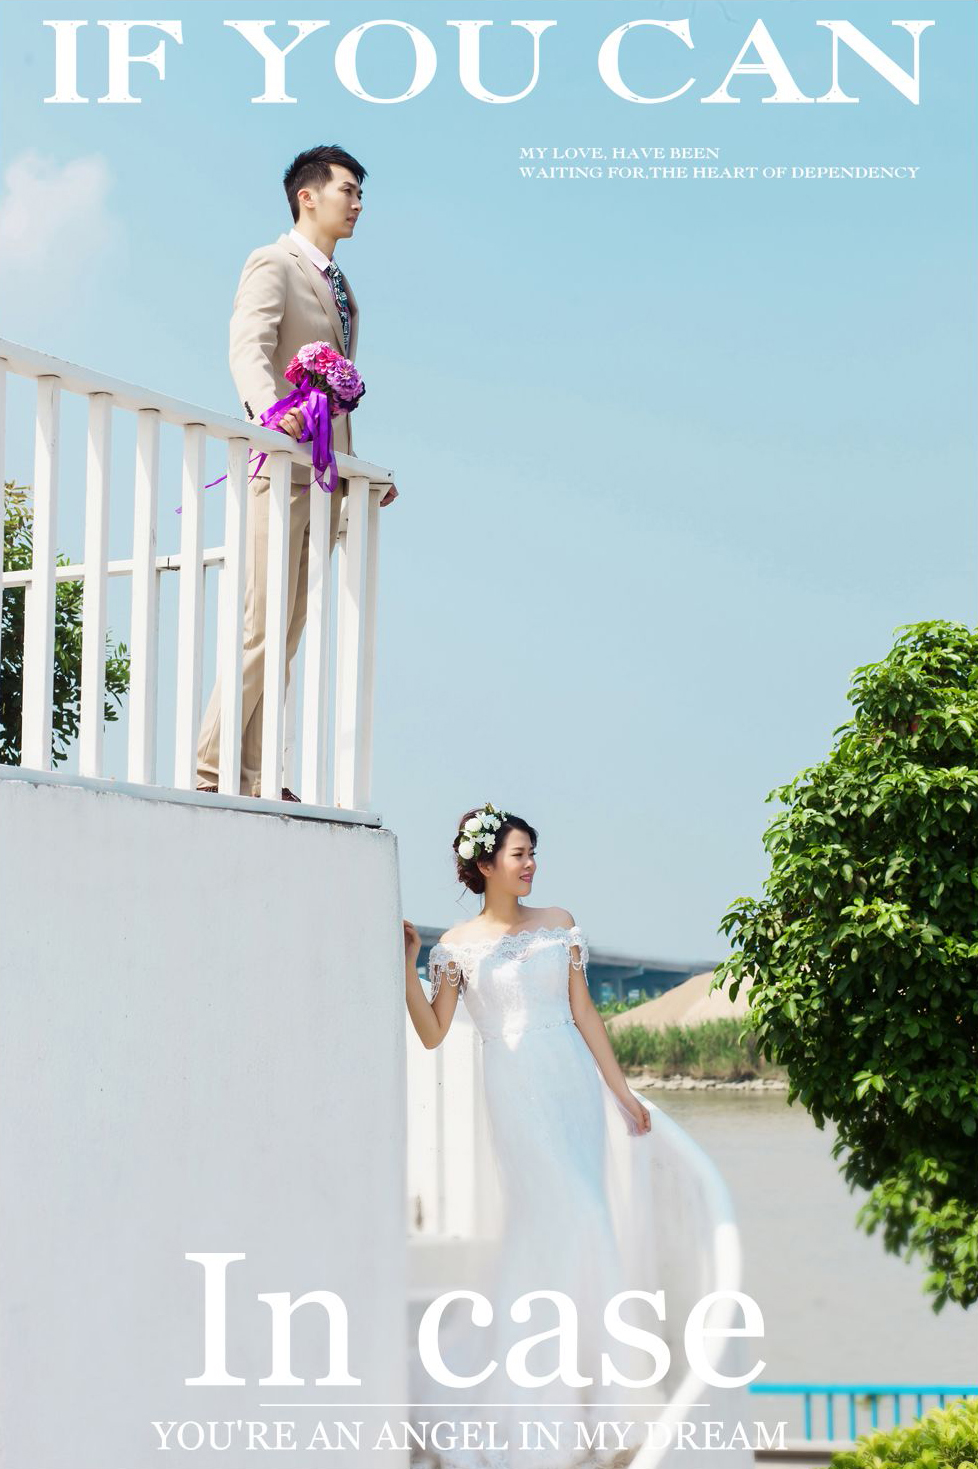 2017年7月广州结婚照,肇庆婚纱照,婚纱照图片